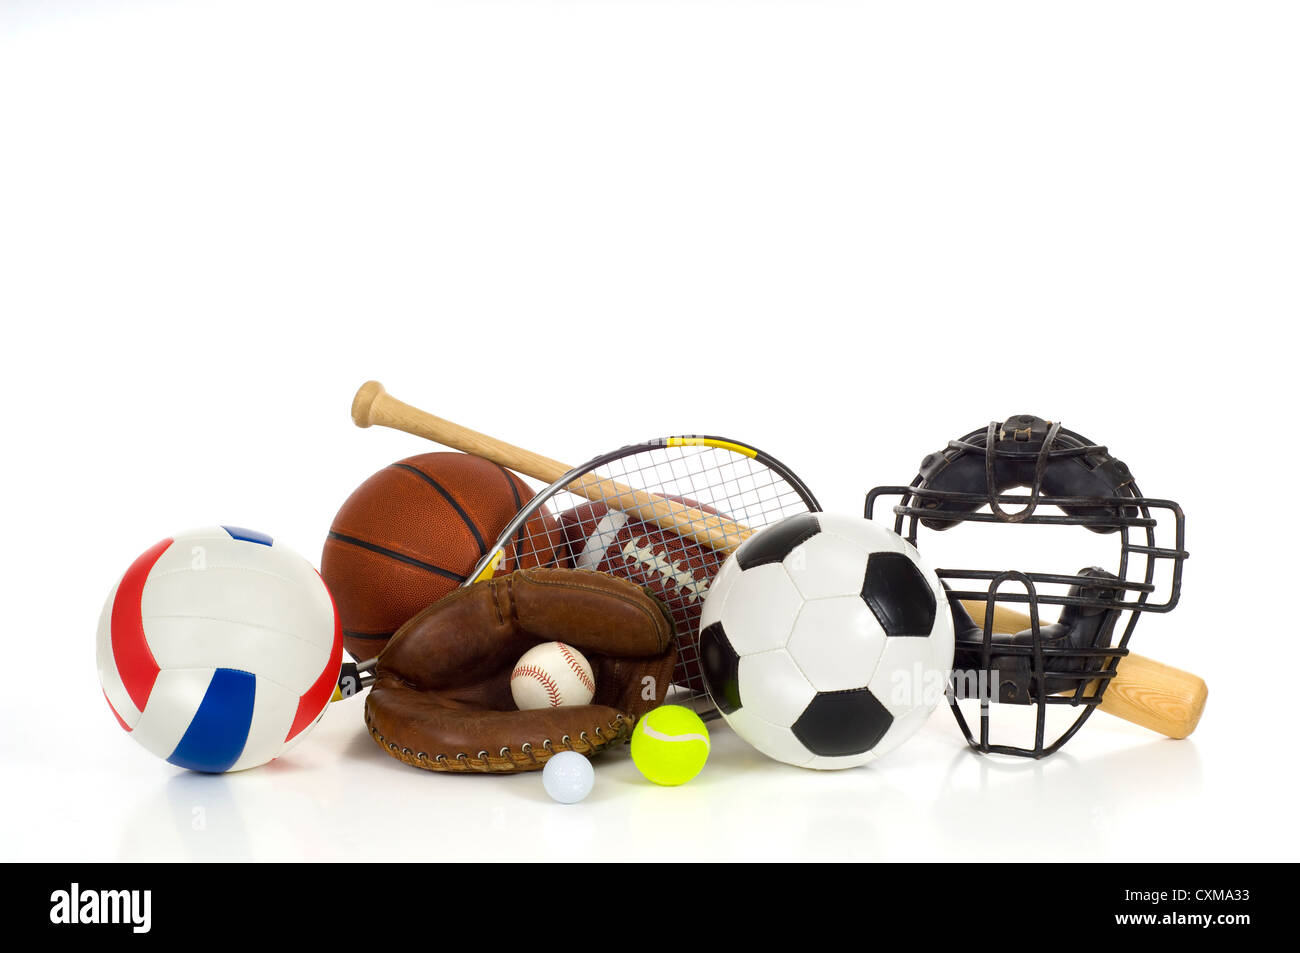 Un assortimento di attrezzature sportive tra cui un campo di pallavolo, pallacanestro, calcio, baseball, palla da golf, palla da tennis e bat Foto Stock